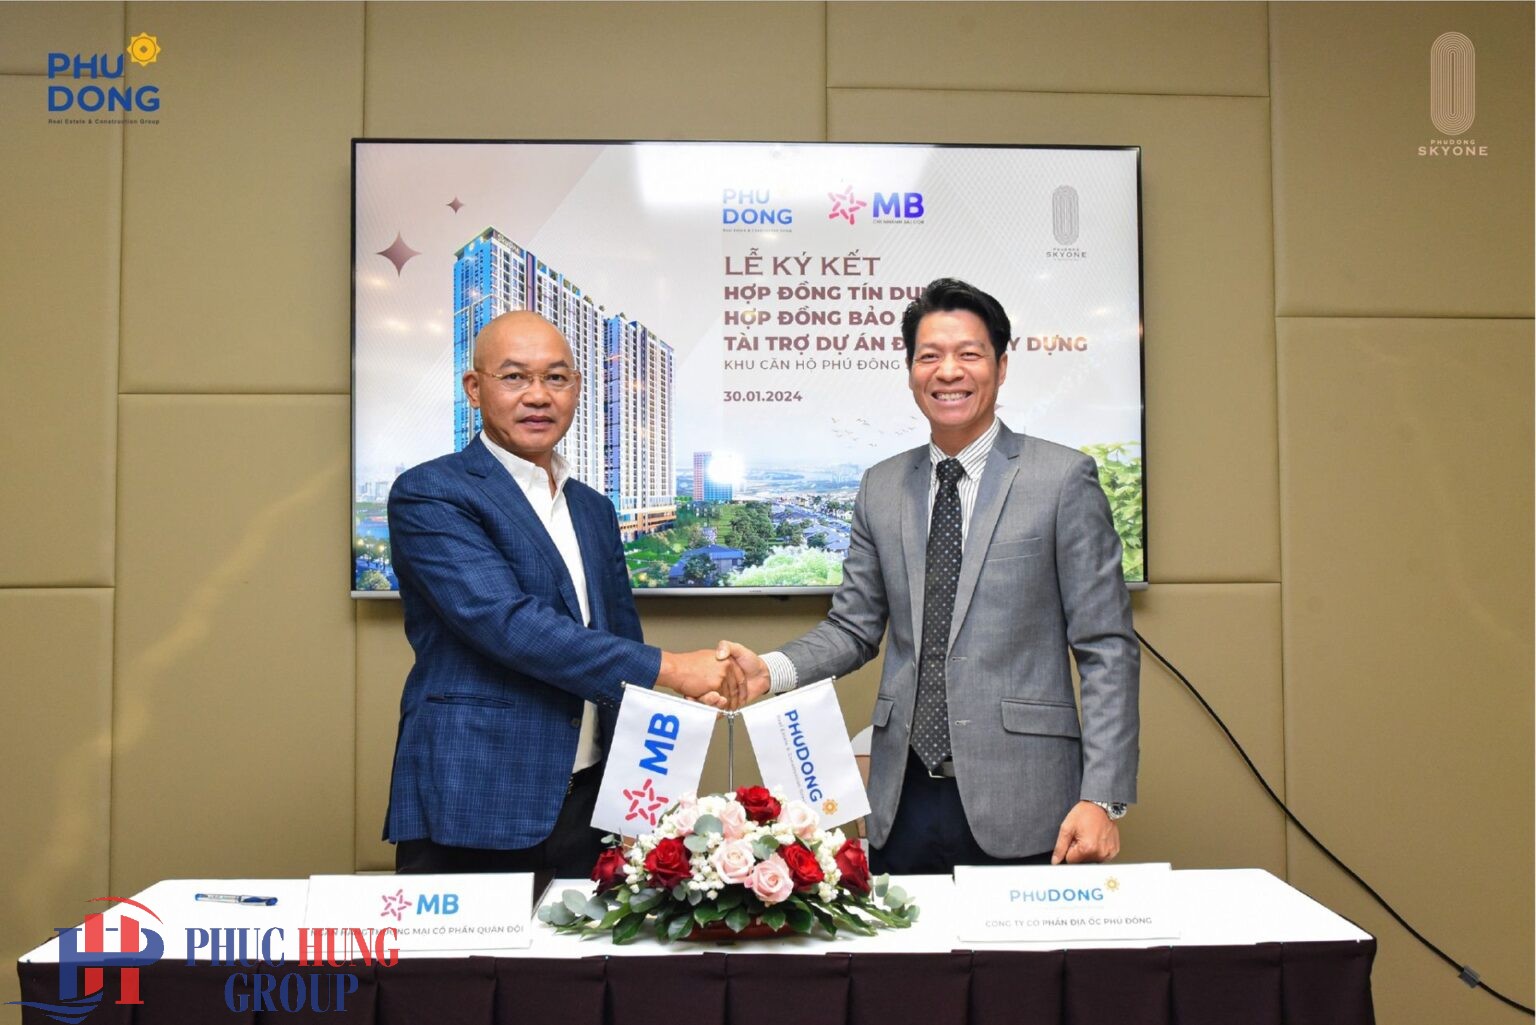 Hợp tác ký kết giữa MB và Phú Đông Group bão lãnh dự án Sky One